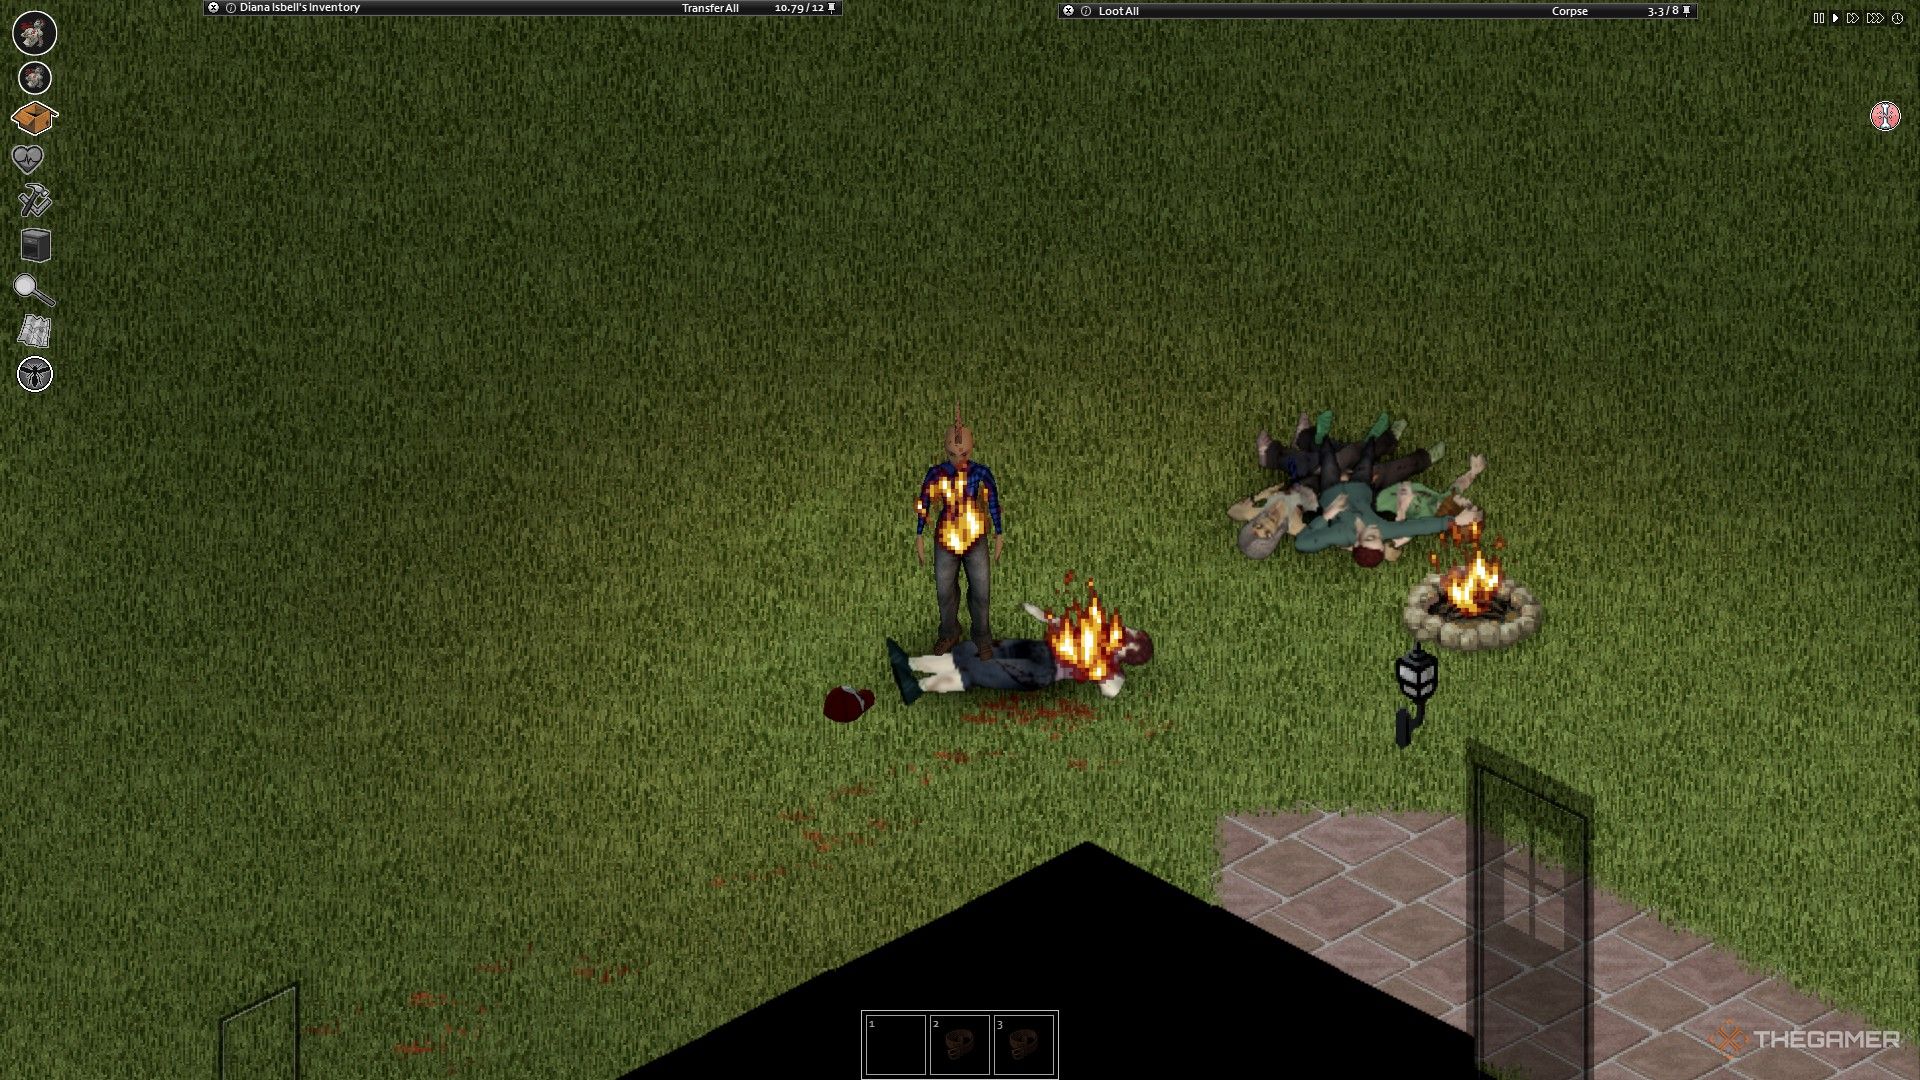 Ein Screenshot von Project Zomboid, der ein Lagerfeuer und einen Haufen Zombies daneben zeigt, wobei der brennende Spielercharakter neben einem toten Zombie steht, der ebenfalls brennt